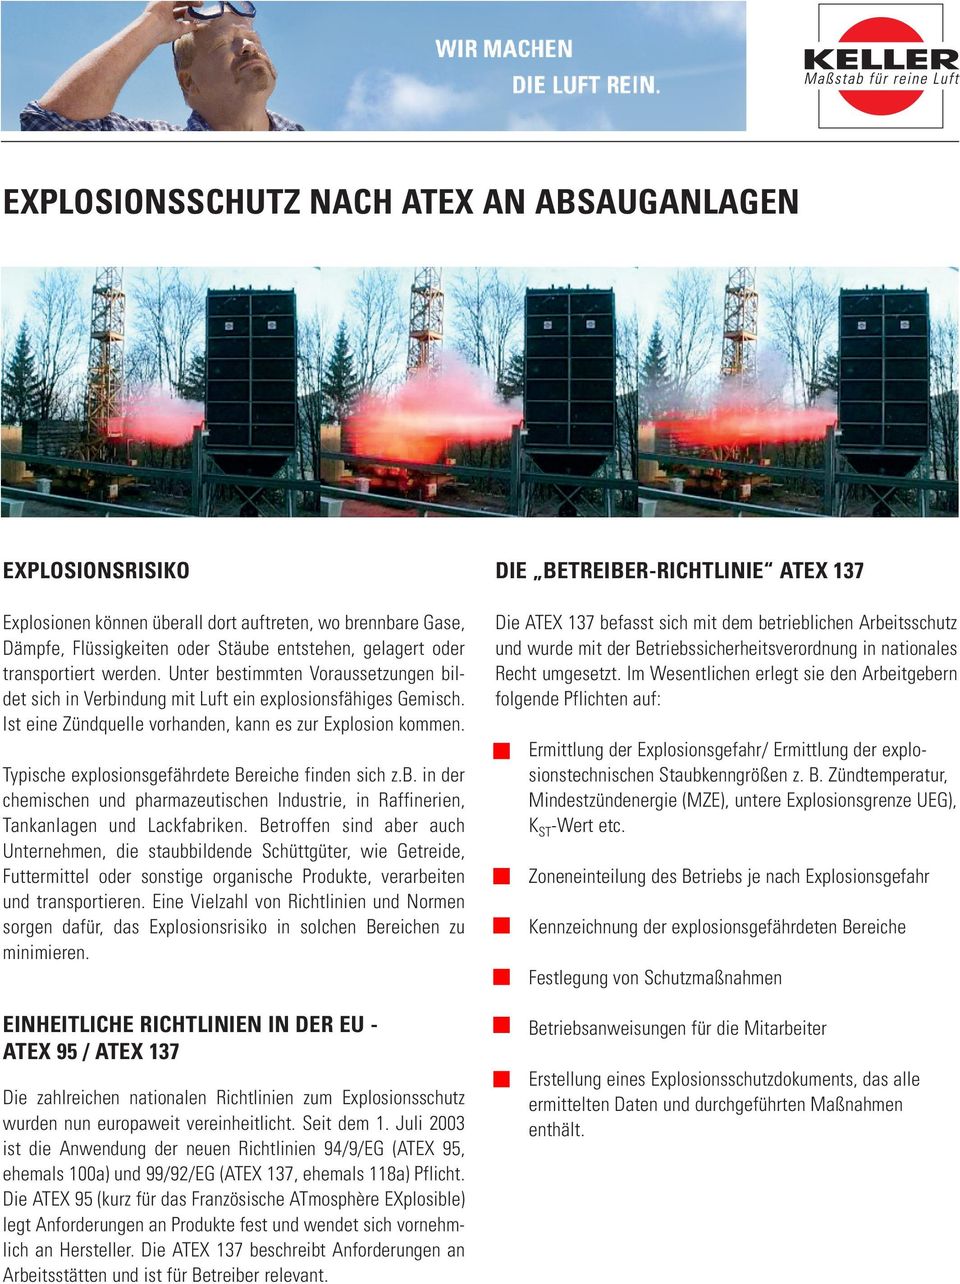 Typische explosionsgefährdete Bereiche finden sich z.b. in der chemischen und pharmazeutischen Industrie, in Raffinerien, Tankanlagen und Lackfabriken.